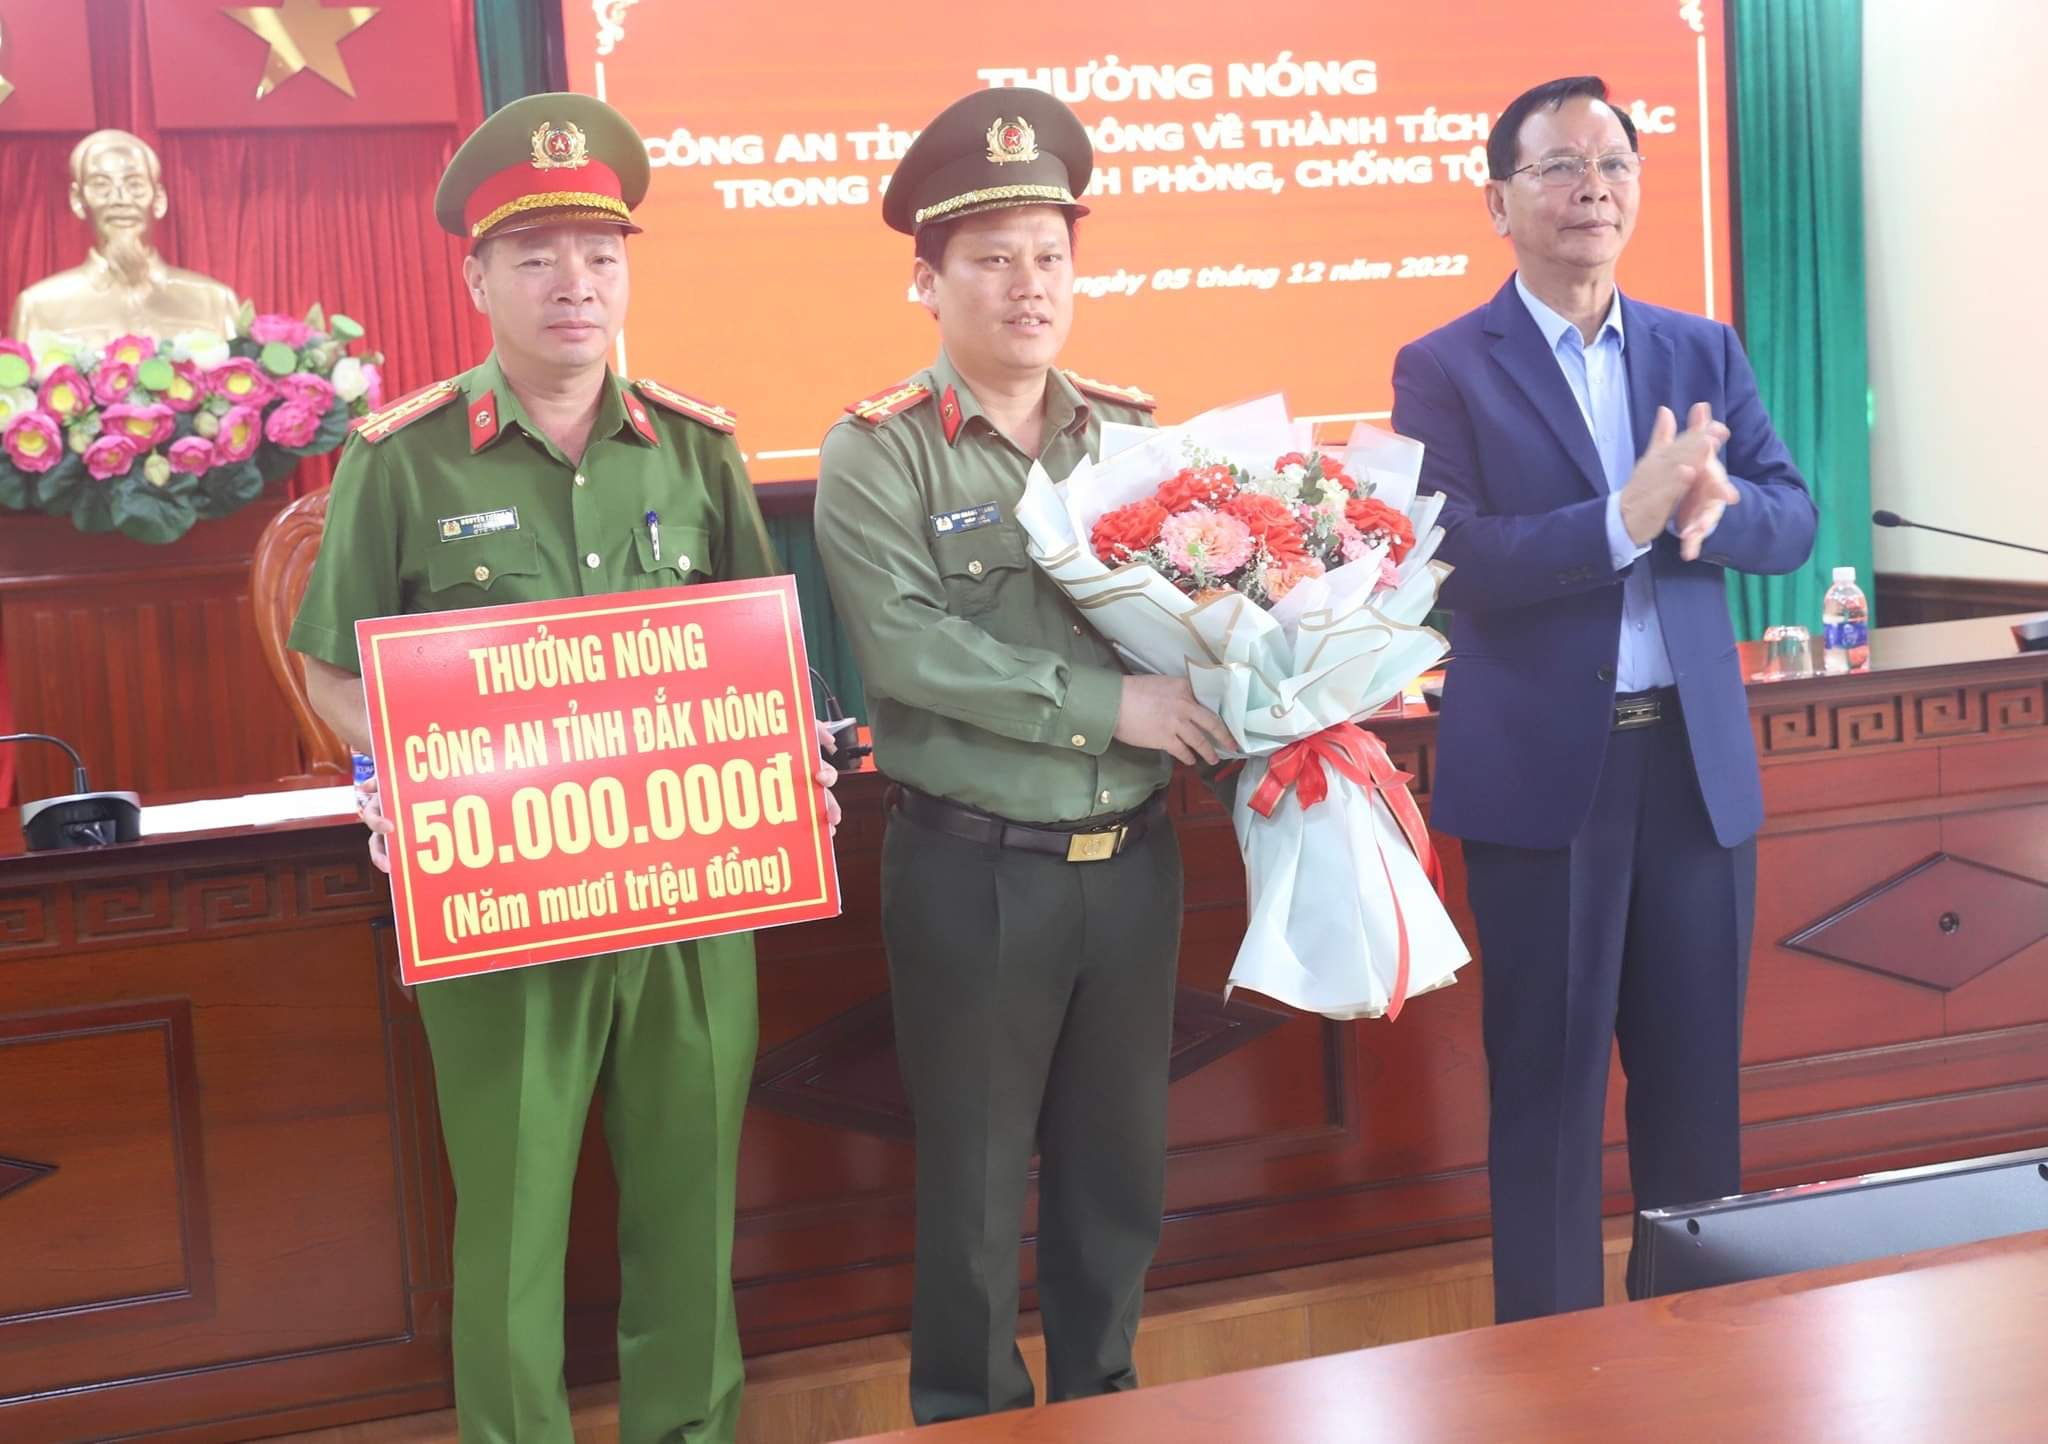 Hình ảnh: Bí thư Tỉnh ủy Đắk Nông biểu dương chiến công xuất sắc của Công an tỉnh số 1